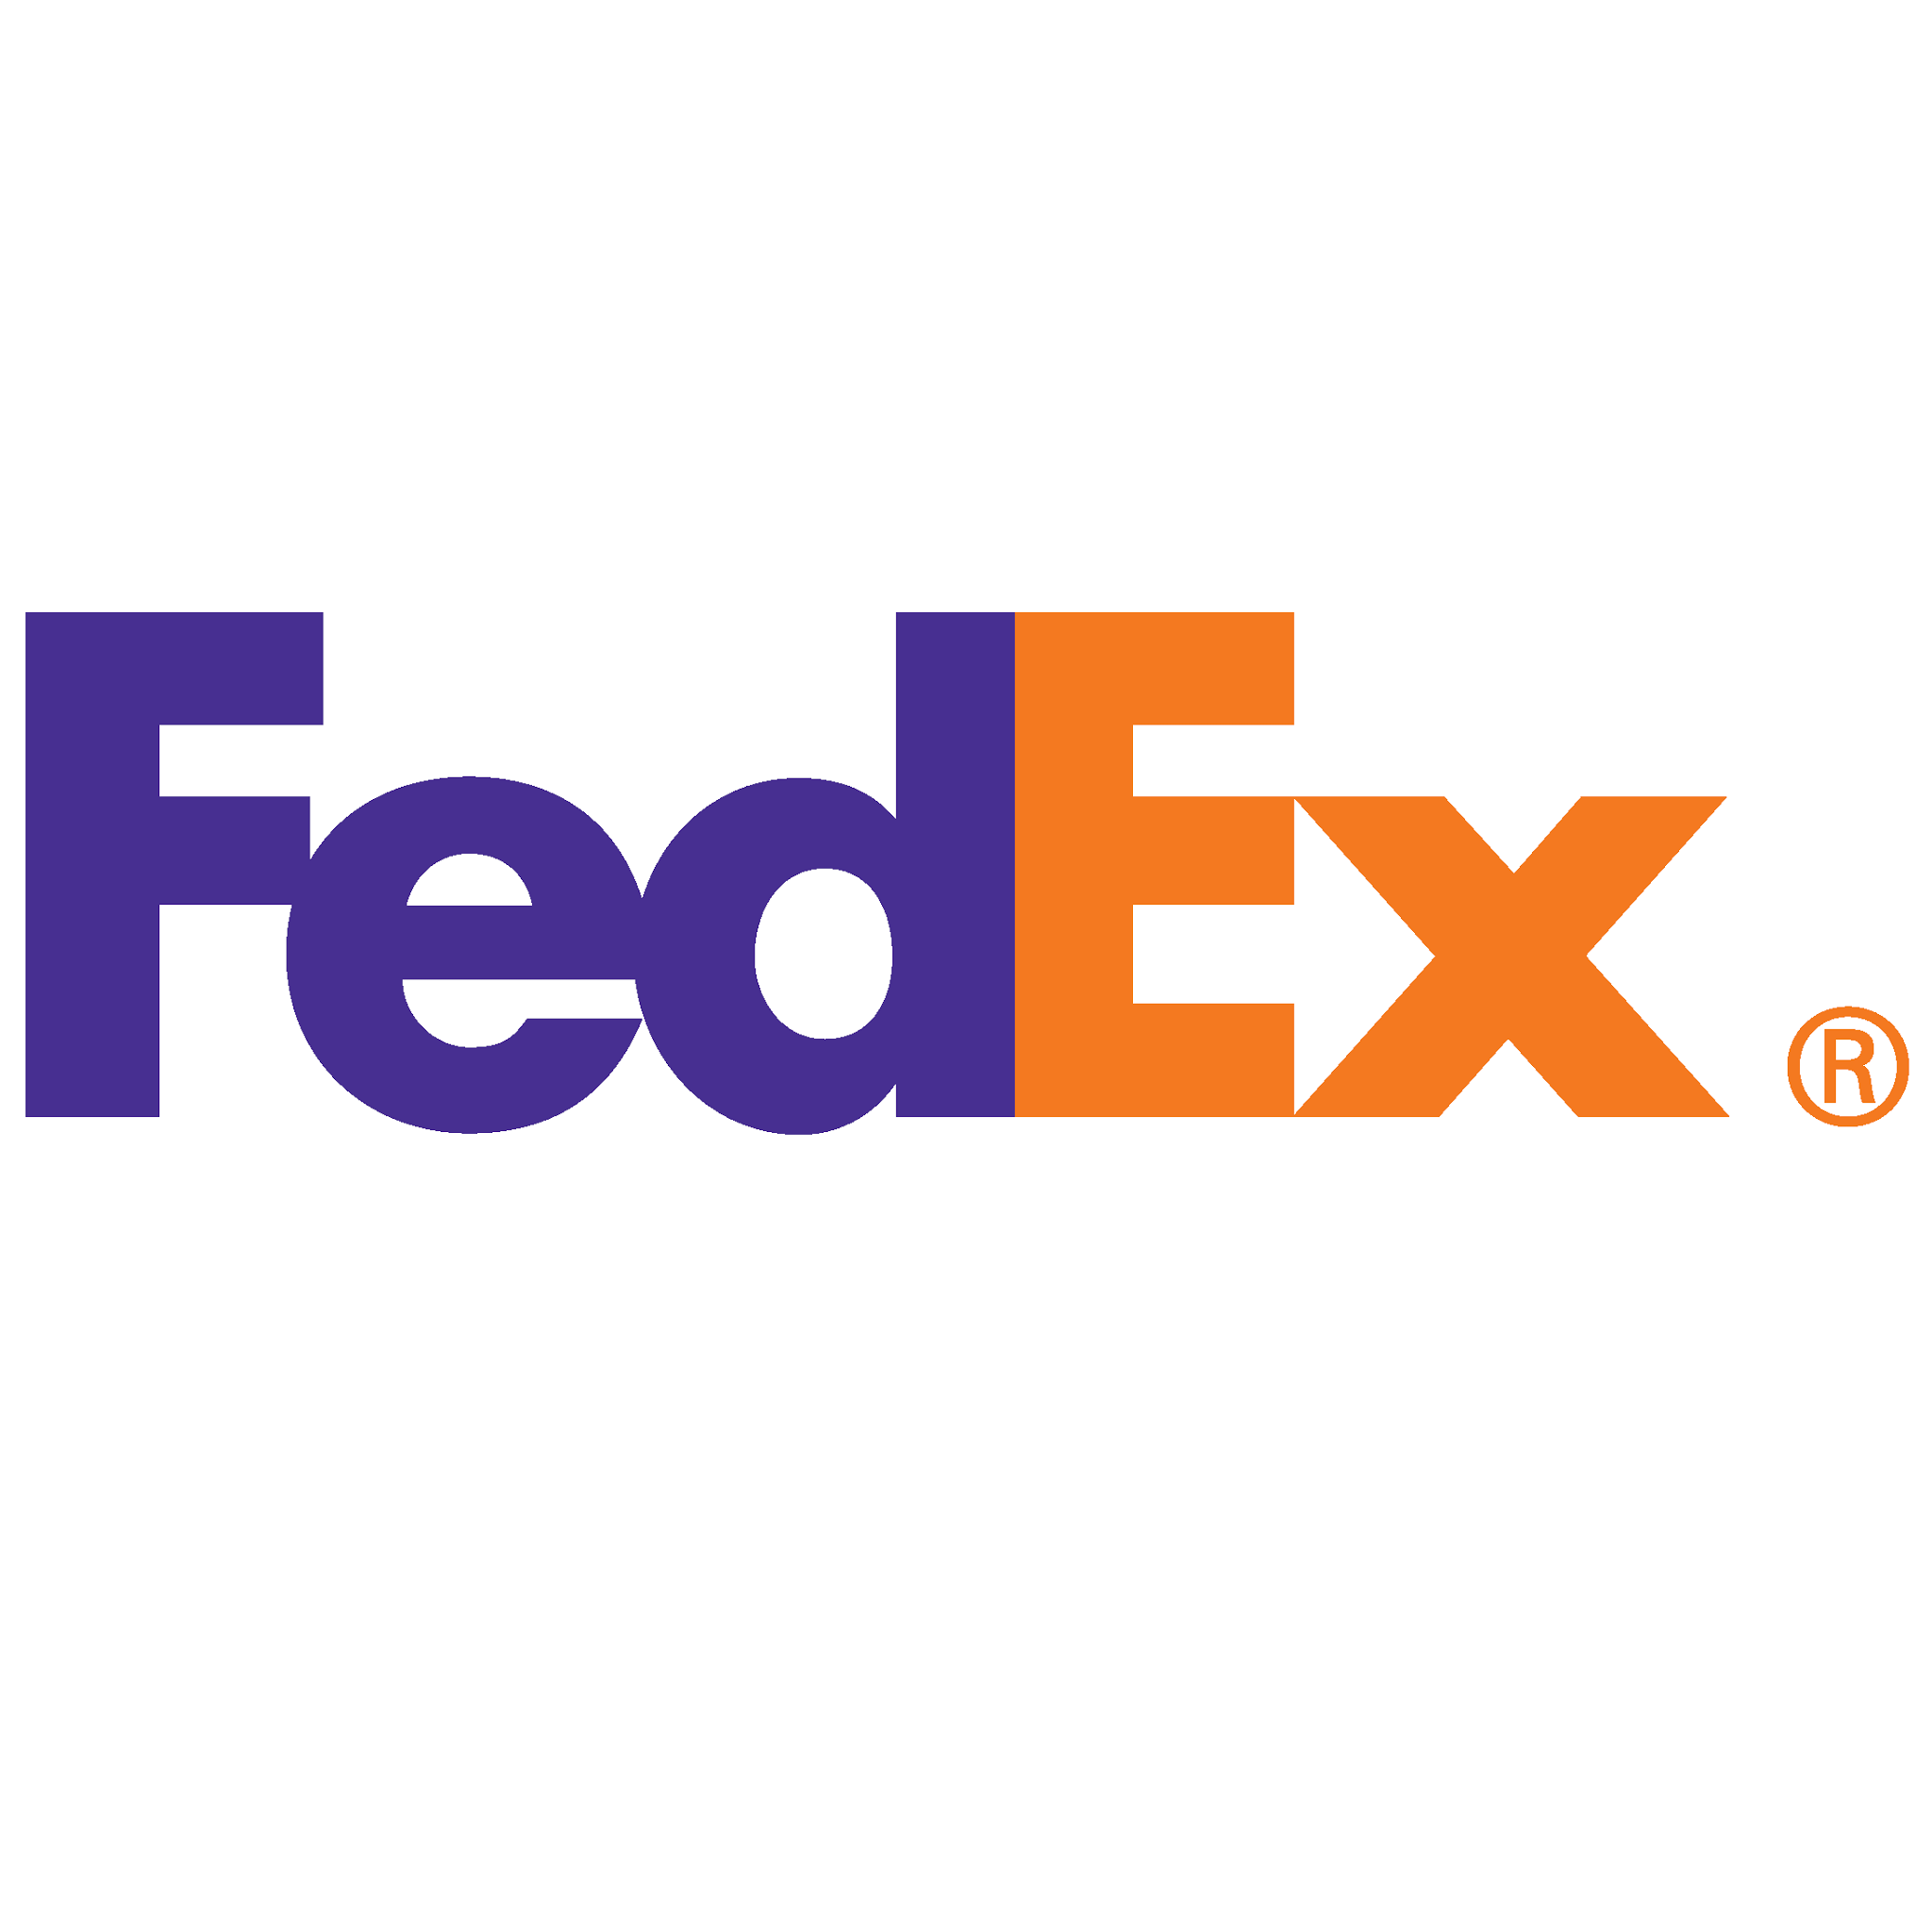 Logo FedEx - Univers Extended est un bon choix de police pour un logo épuré et léger - Image